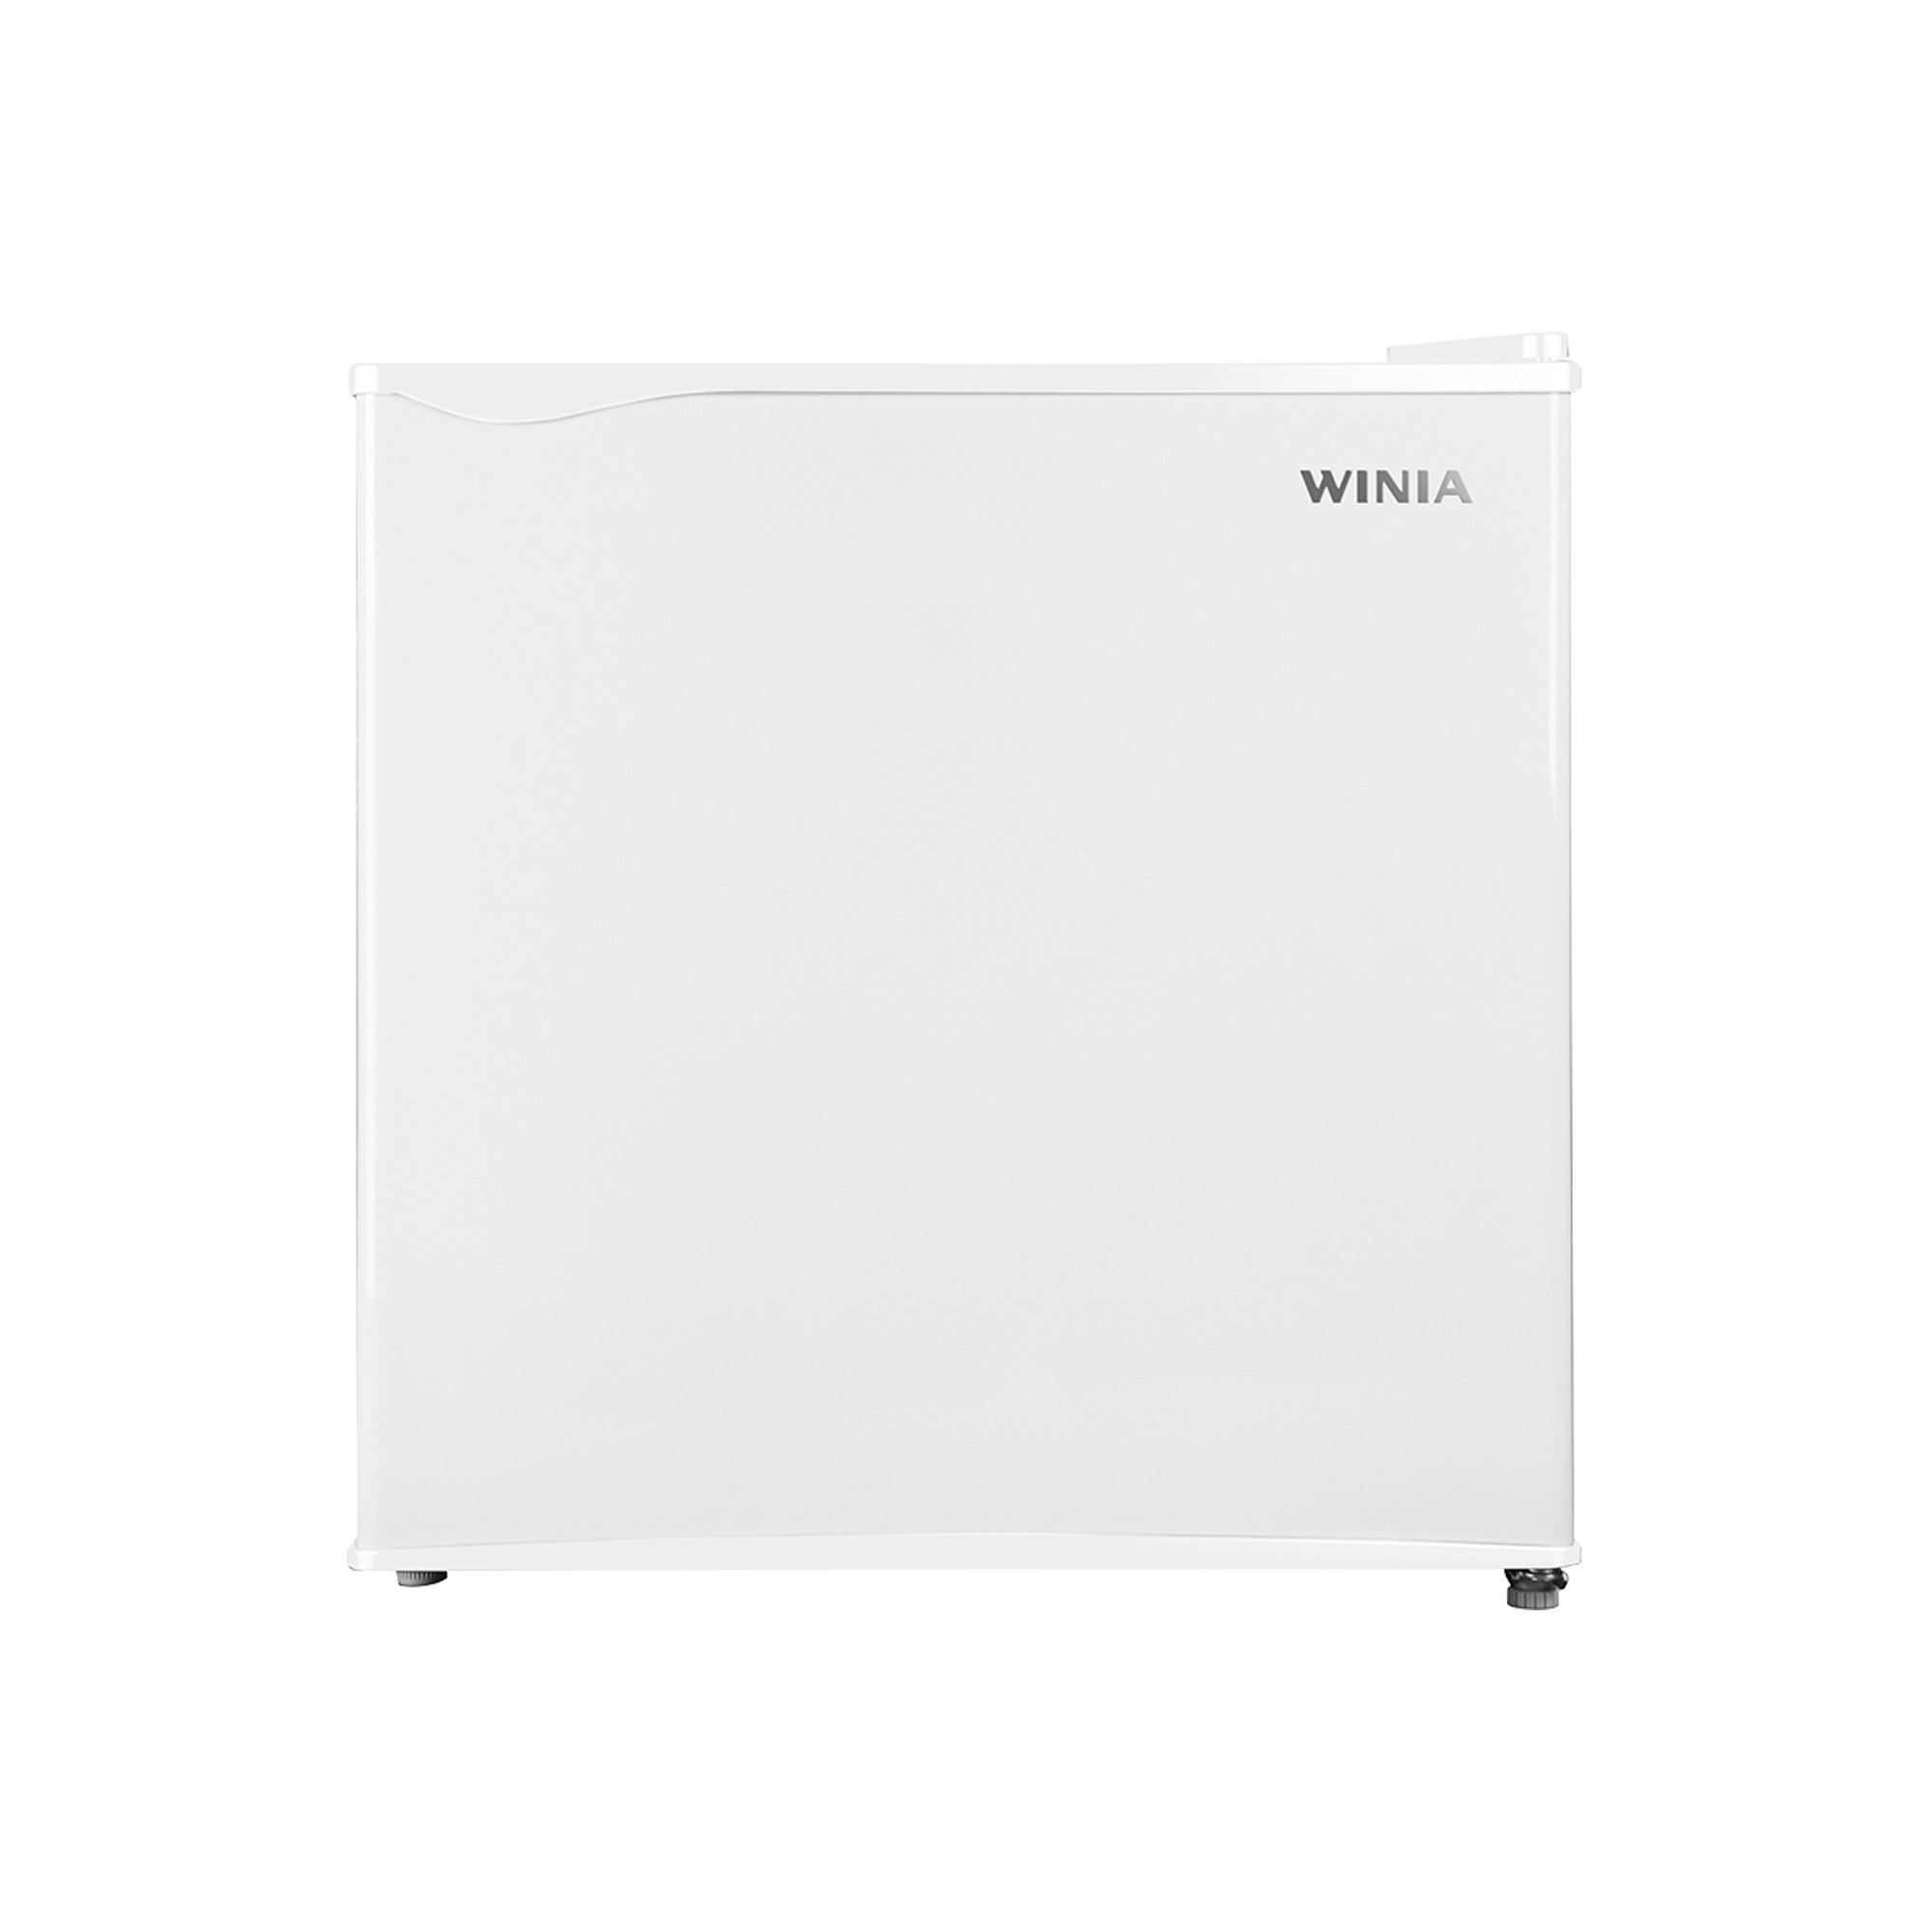 위니아 냉장고 43L  WWRC051EEMWWO(A)